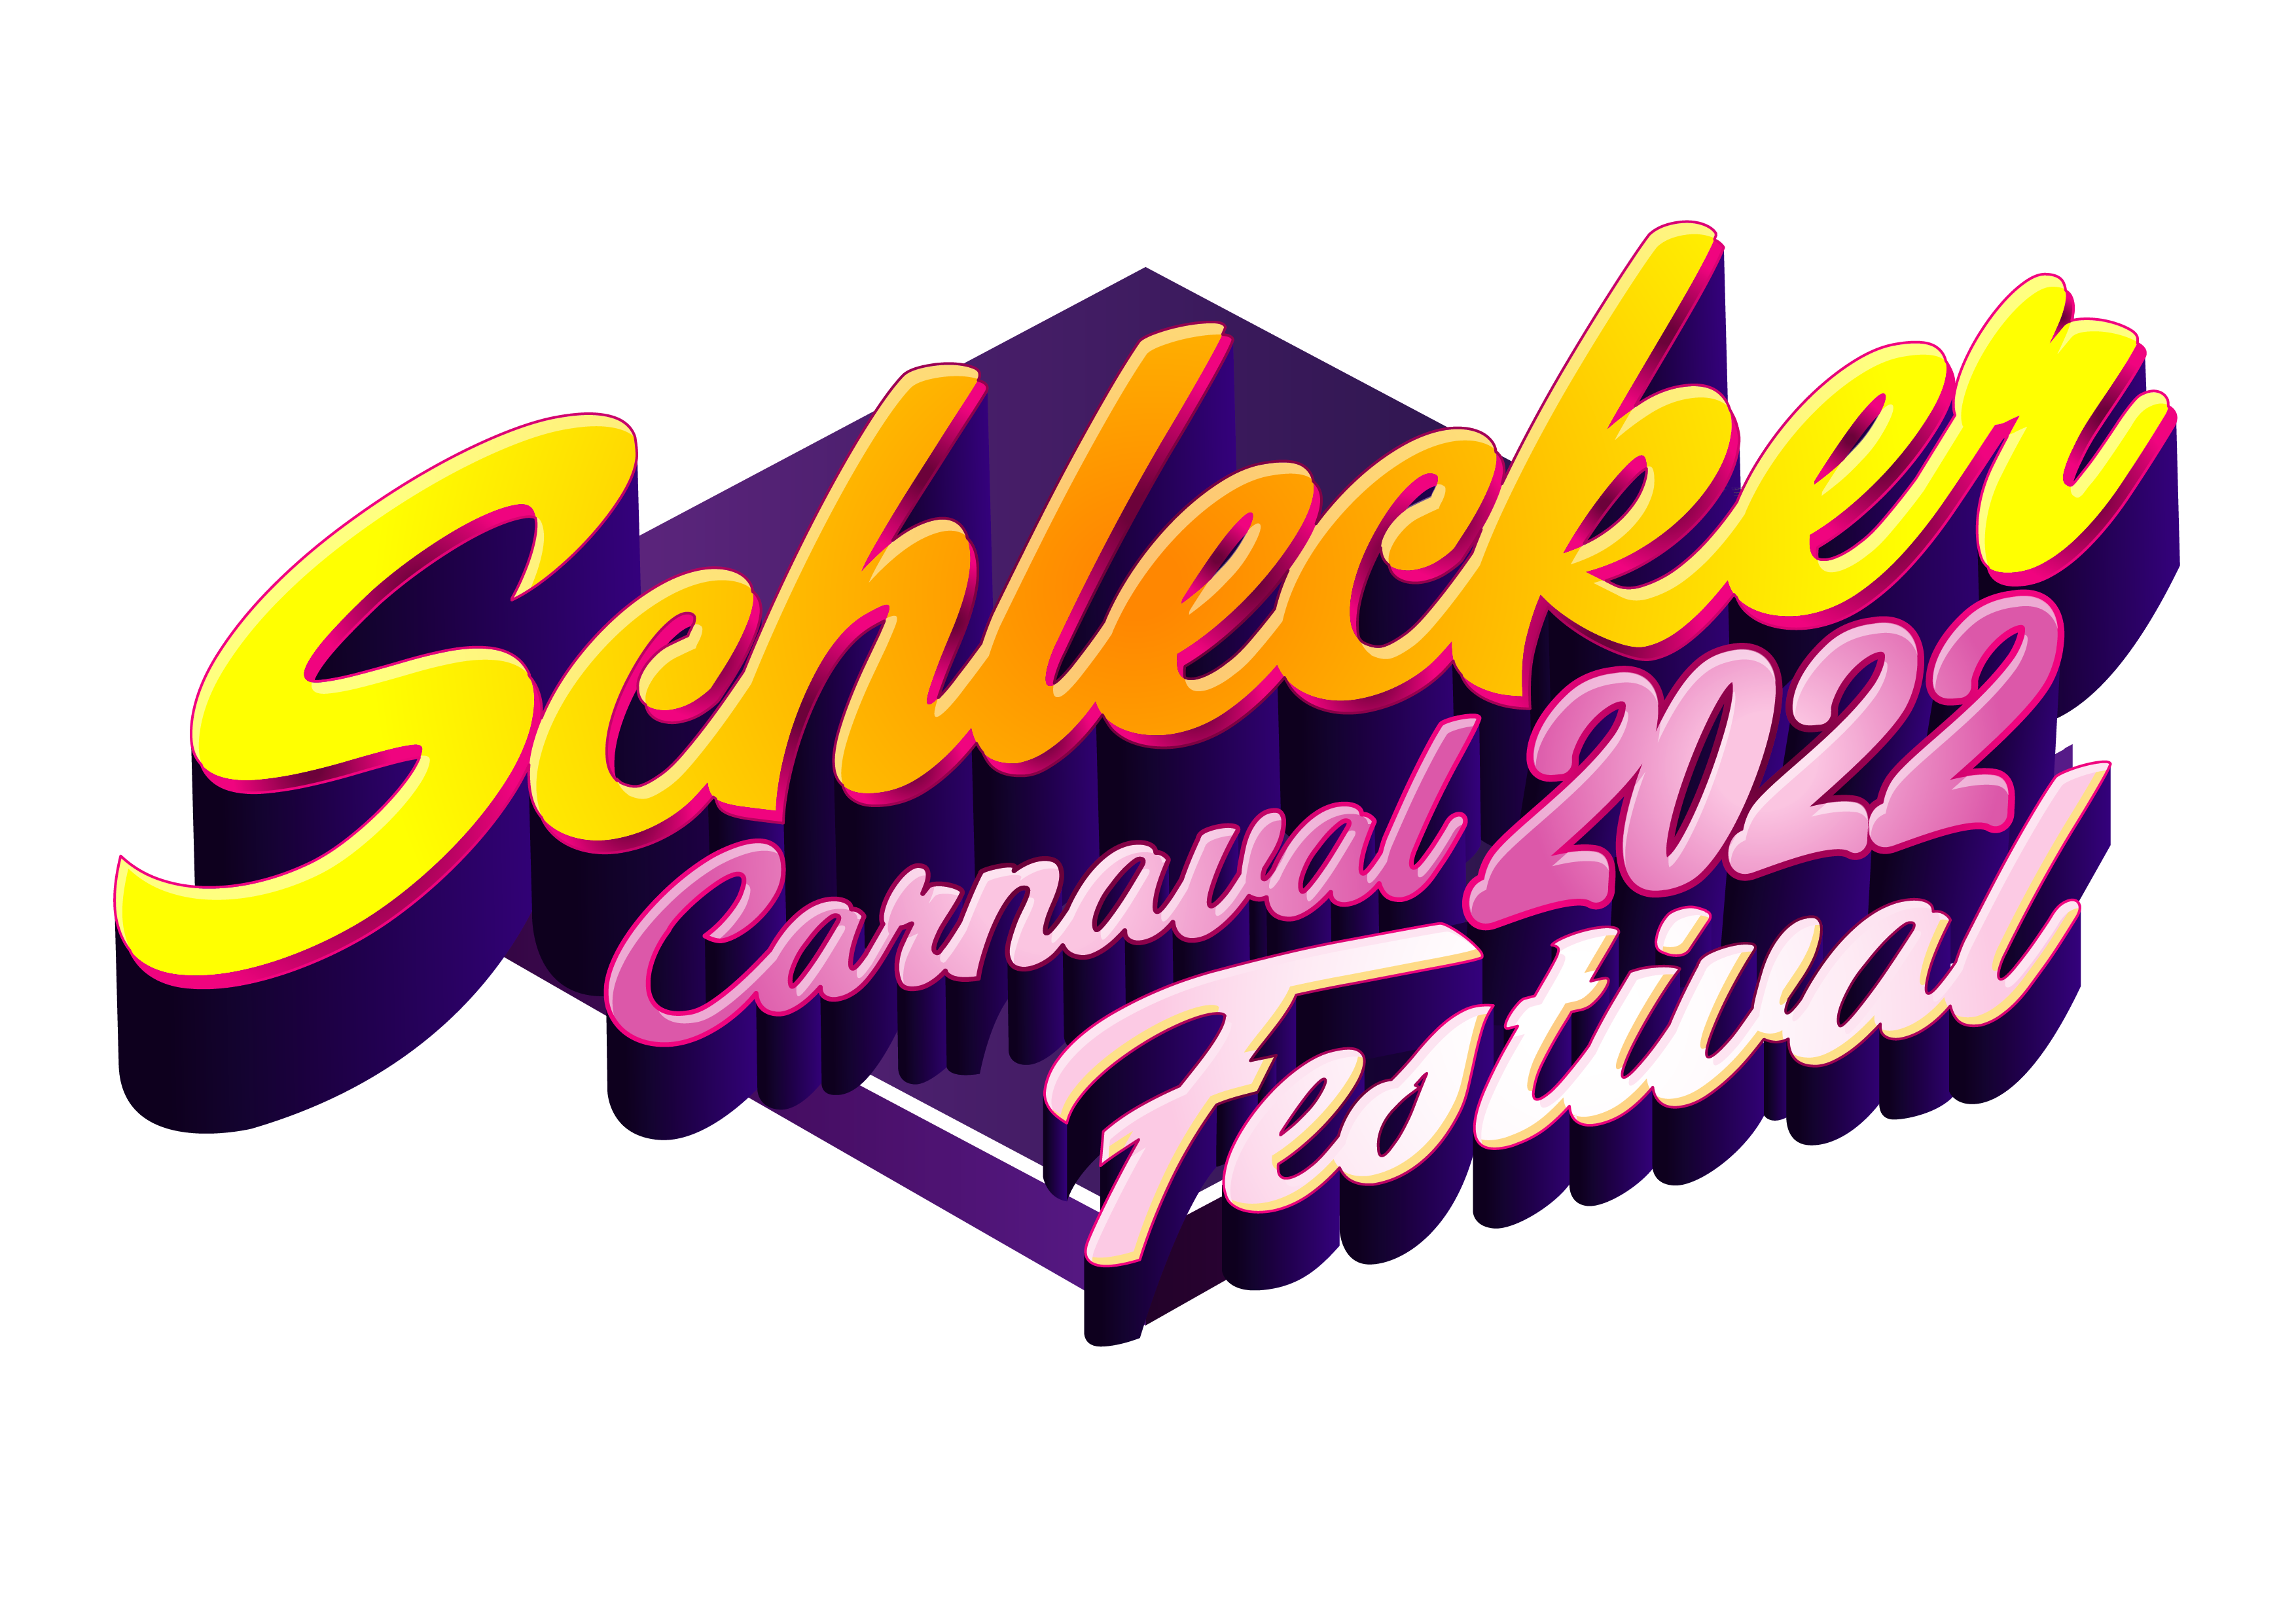 Schlecker Carnaval festival 2022